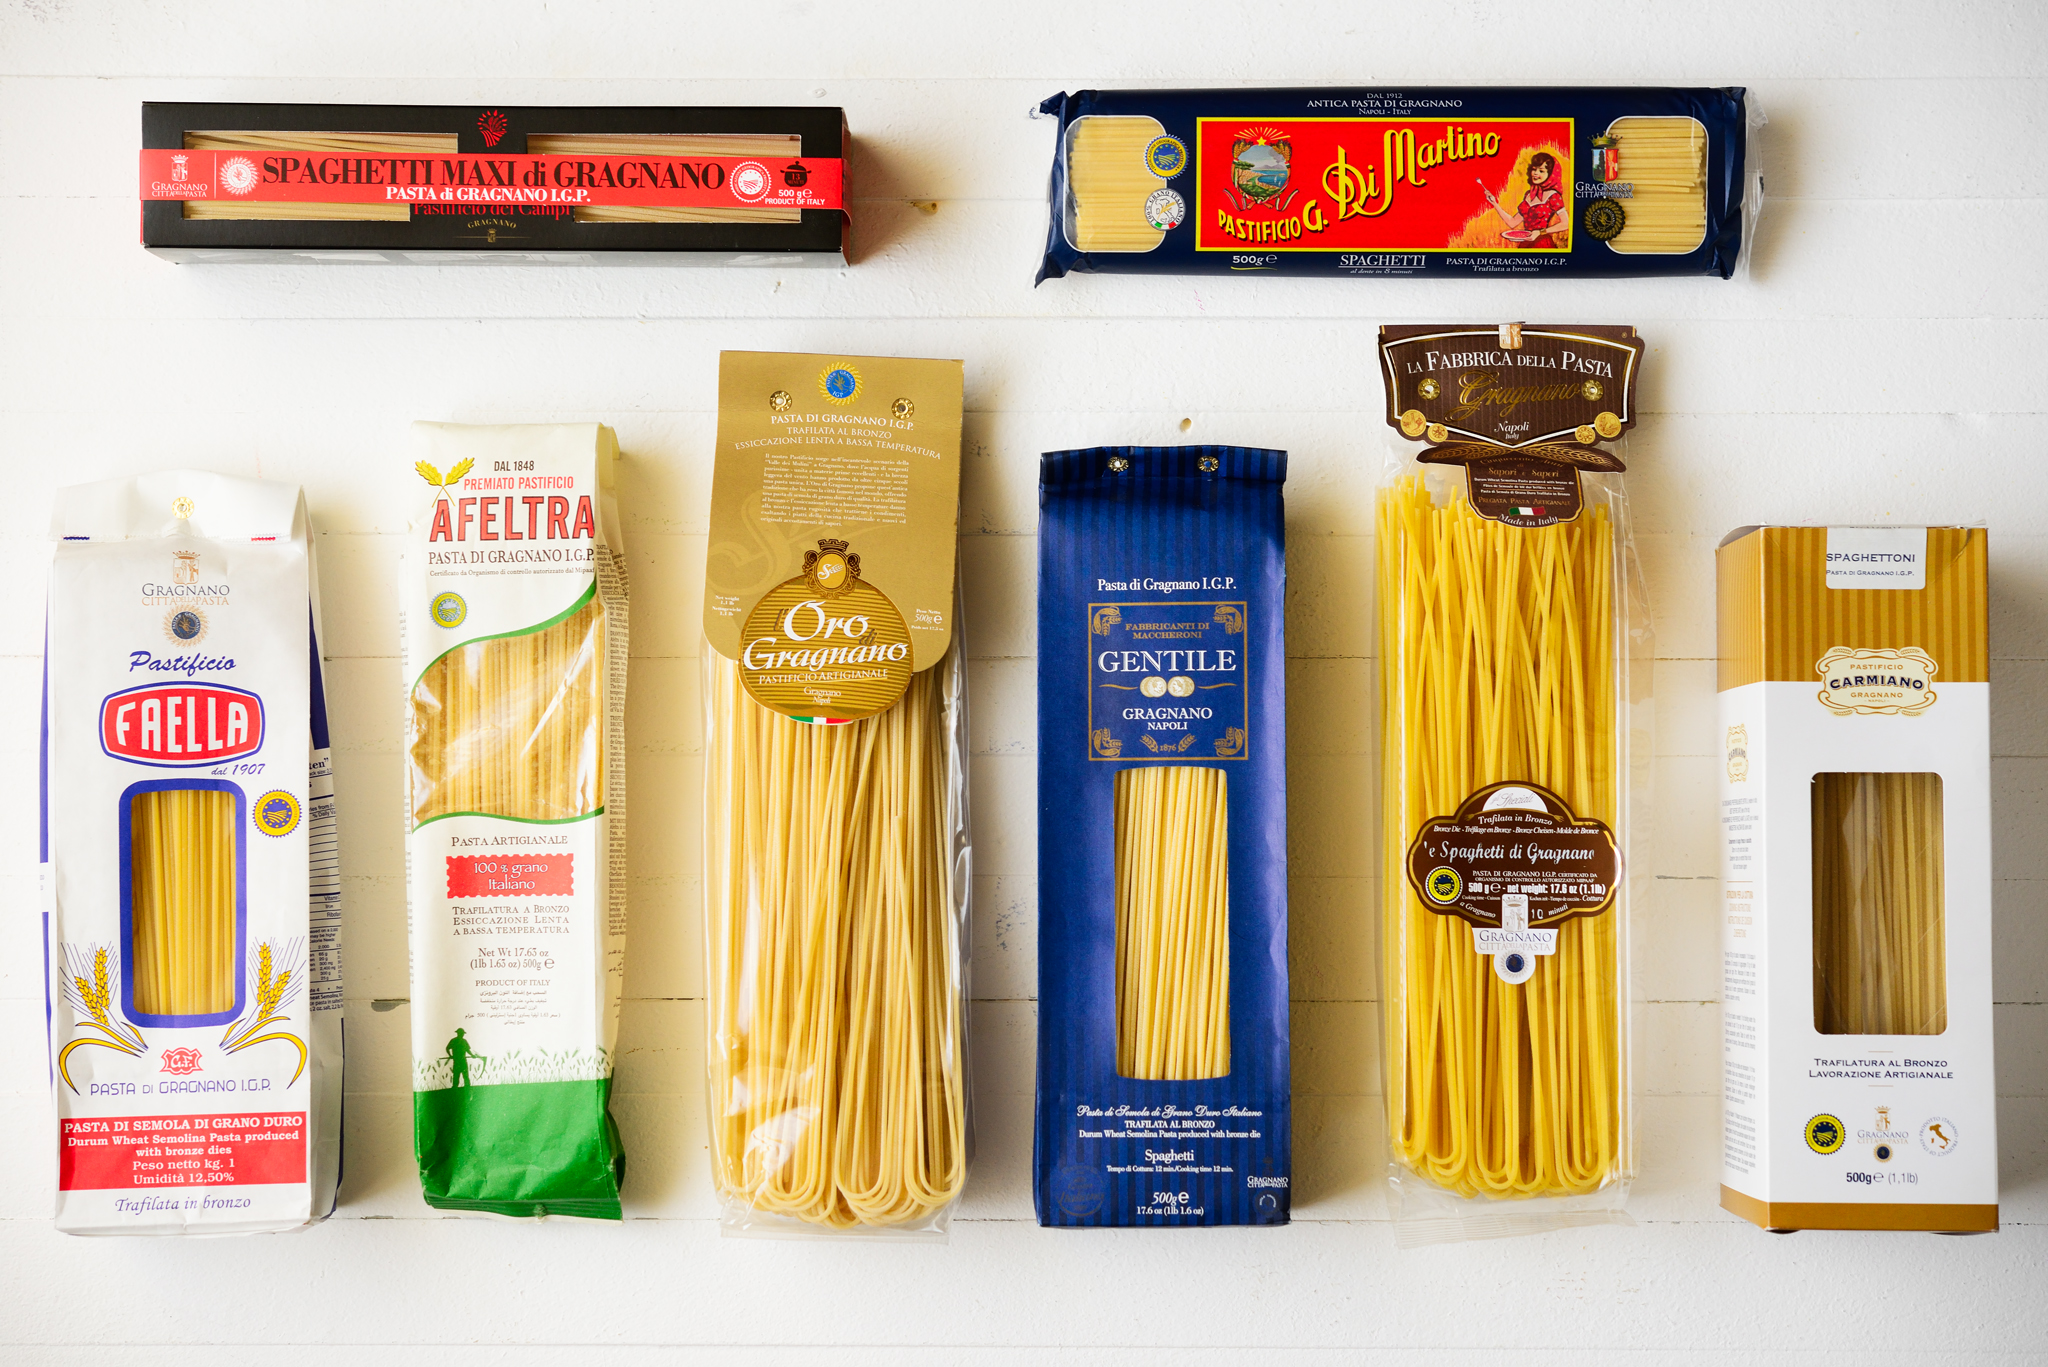 Упаковка спагетти. Спагетти ди Граньяно. Спагетти makiz итальянское 800 гр. Музей спагетти в Италии. Макароны в упаковке.